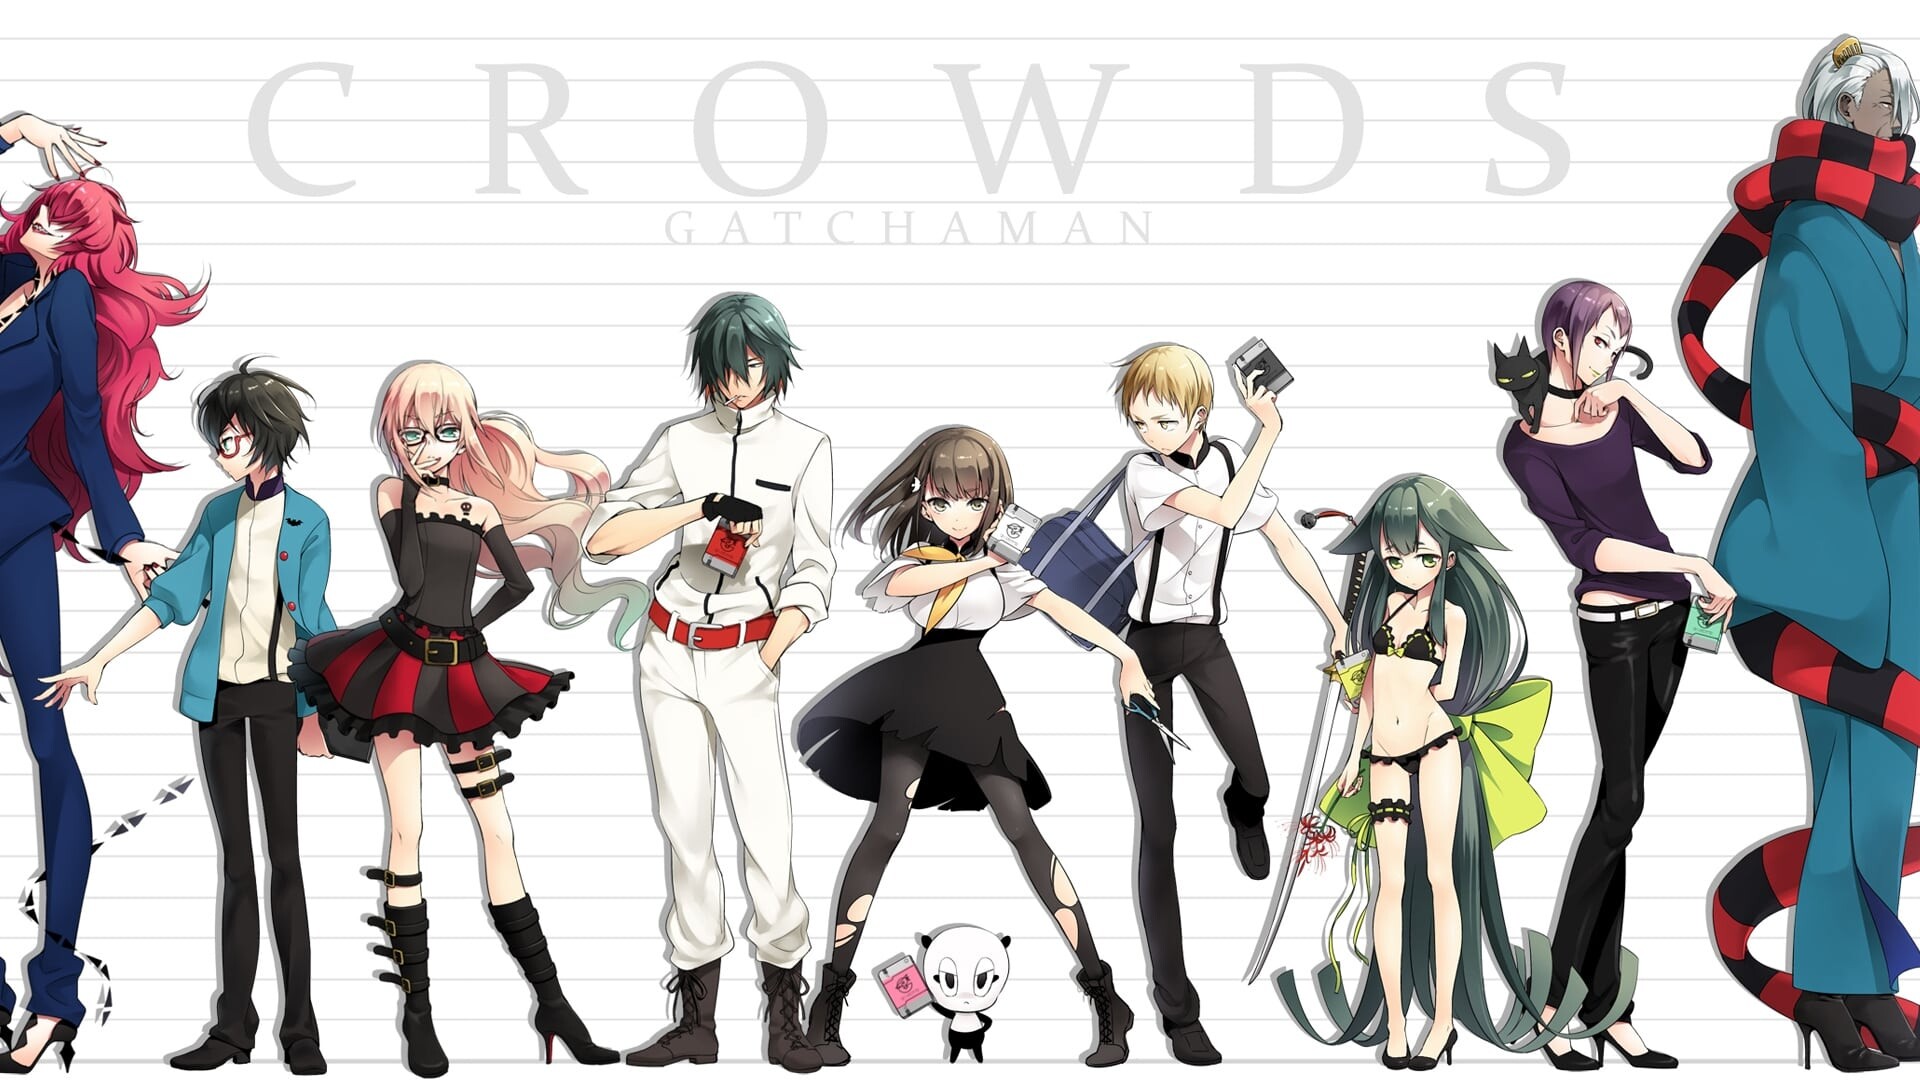 Gatchaman Crowds: Anime TV Series 2013-2015, Berg Katze, Rui Ninomiya, Joe Hibiki, Hajime Ichinose, Sugane Tachibana. 1920x1080 Full HD Background.